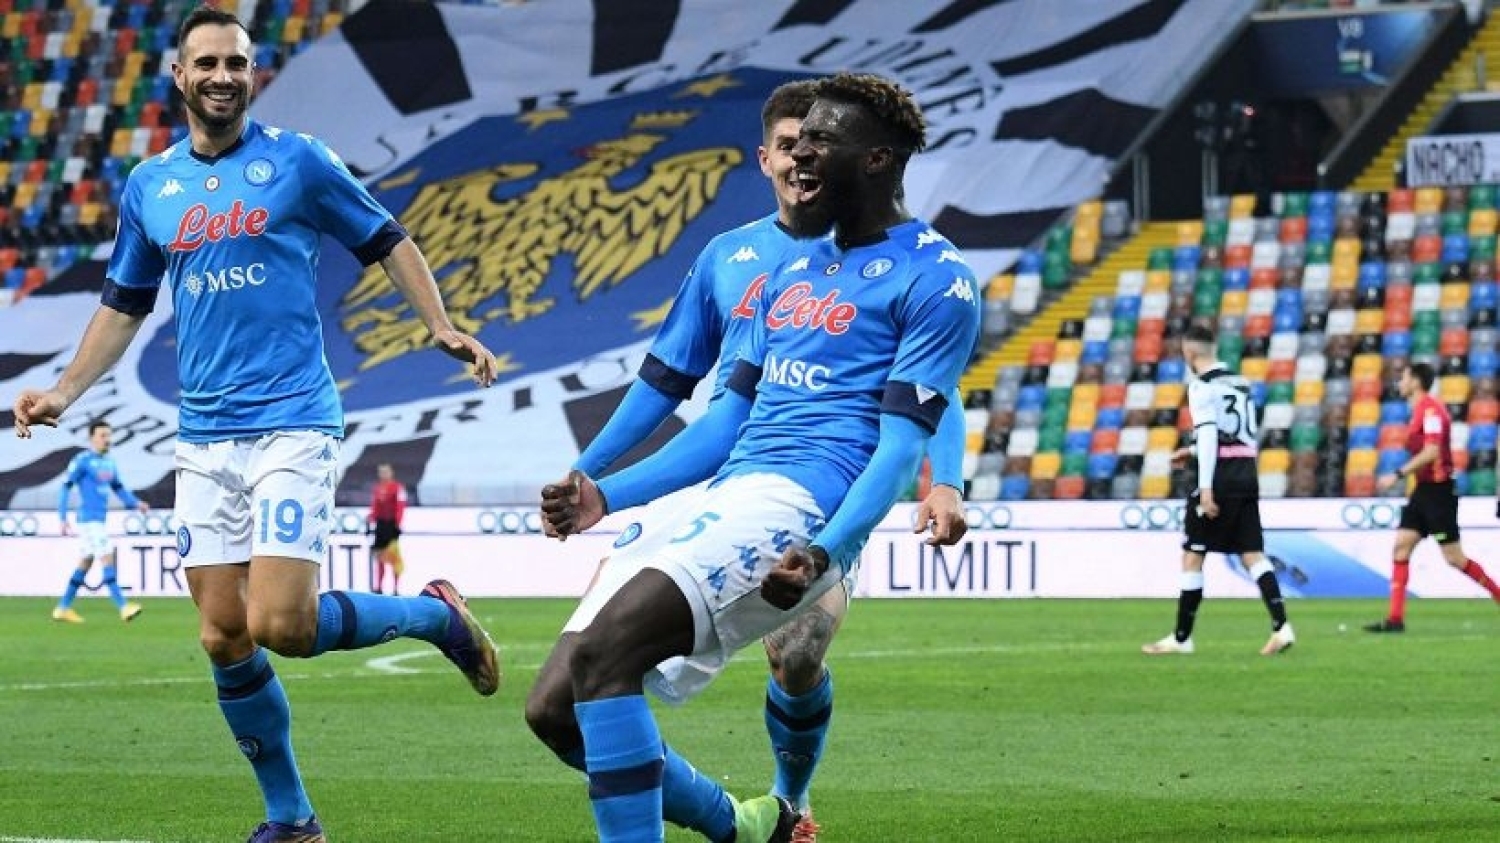 Udinese - Napoli, i precedenti: nel match di gennaio, azzurri vittoriosi al 90' con Bakayoko